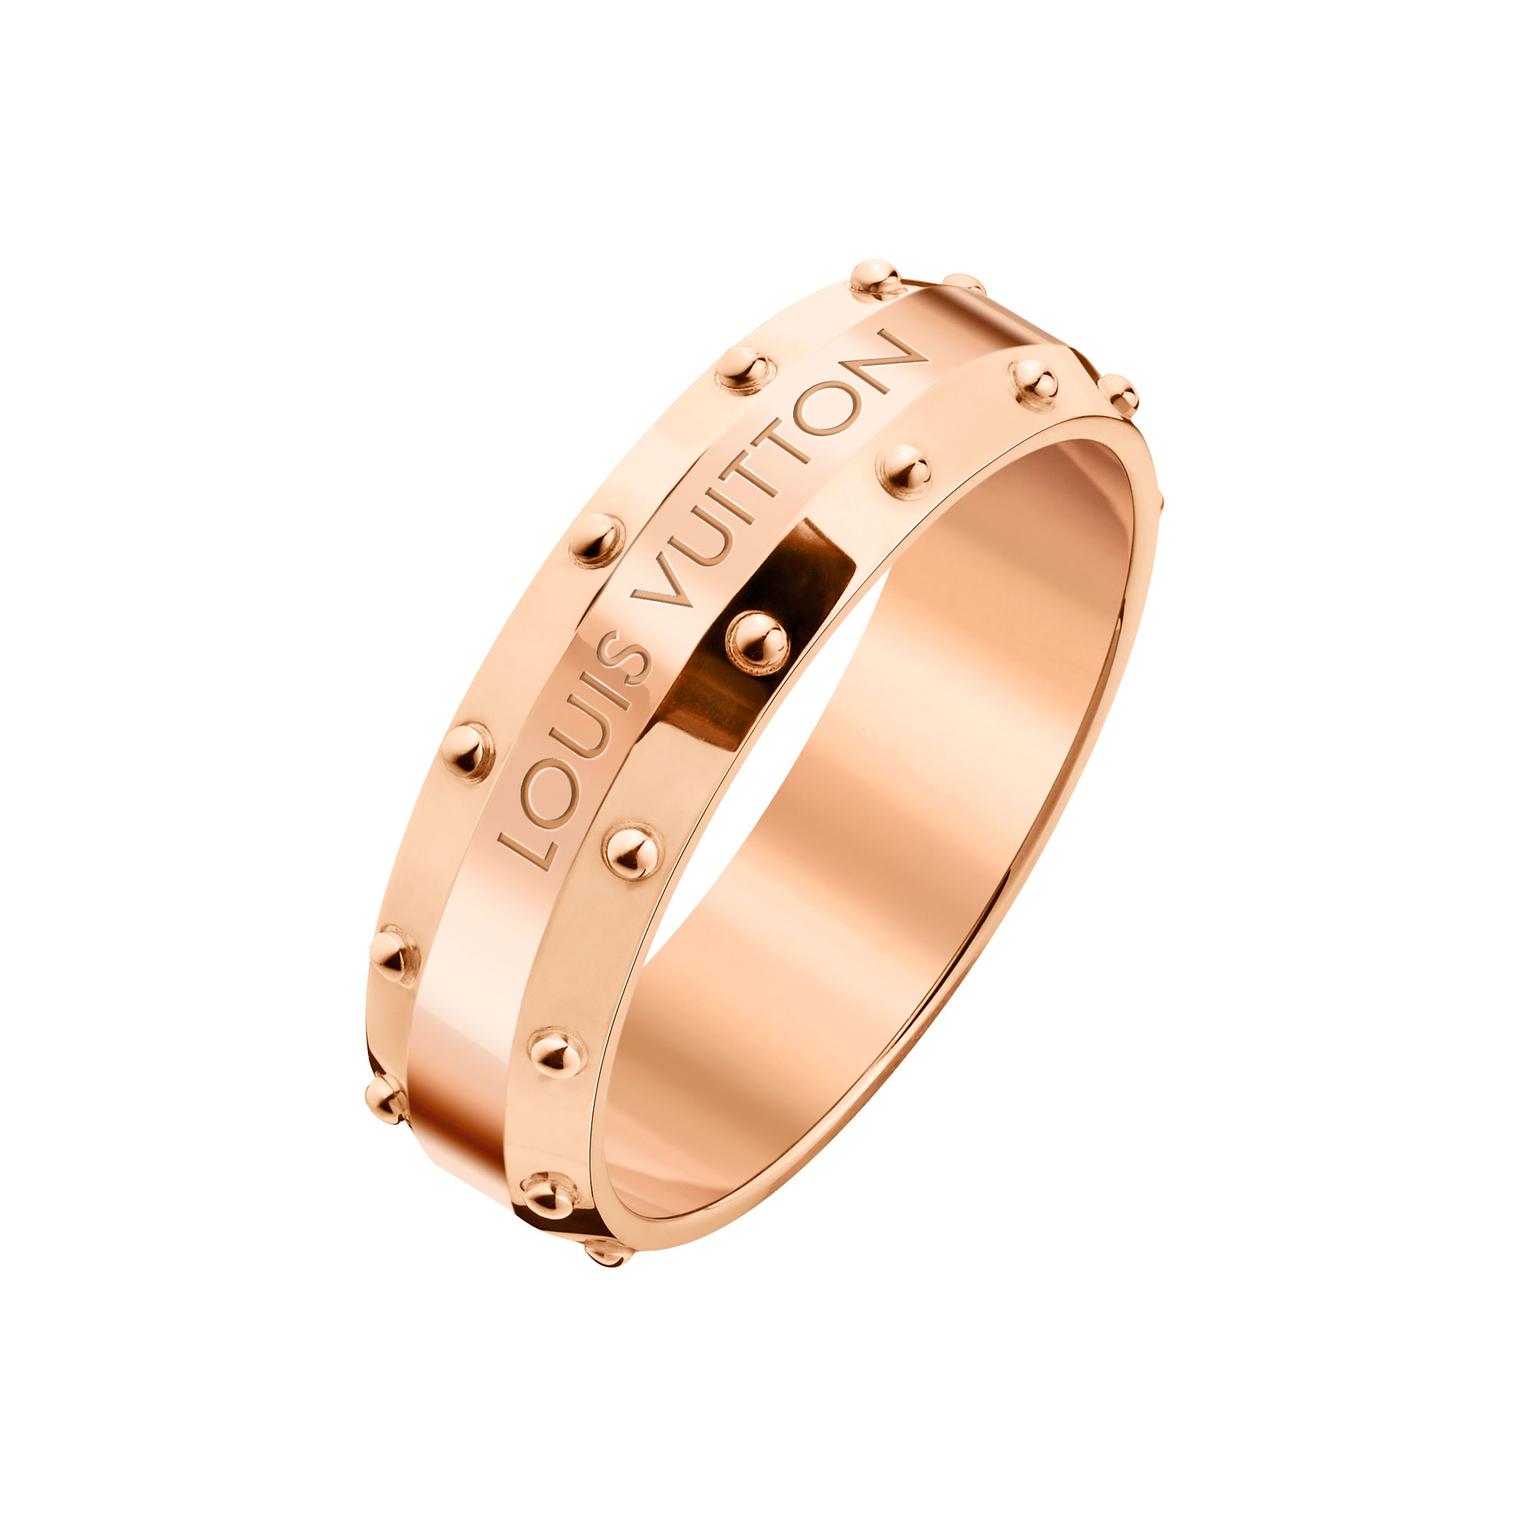 Emprise pink gold ring, Louis Vuitton